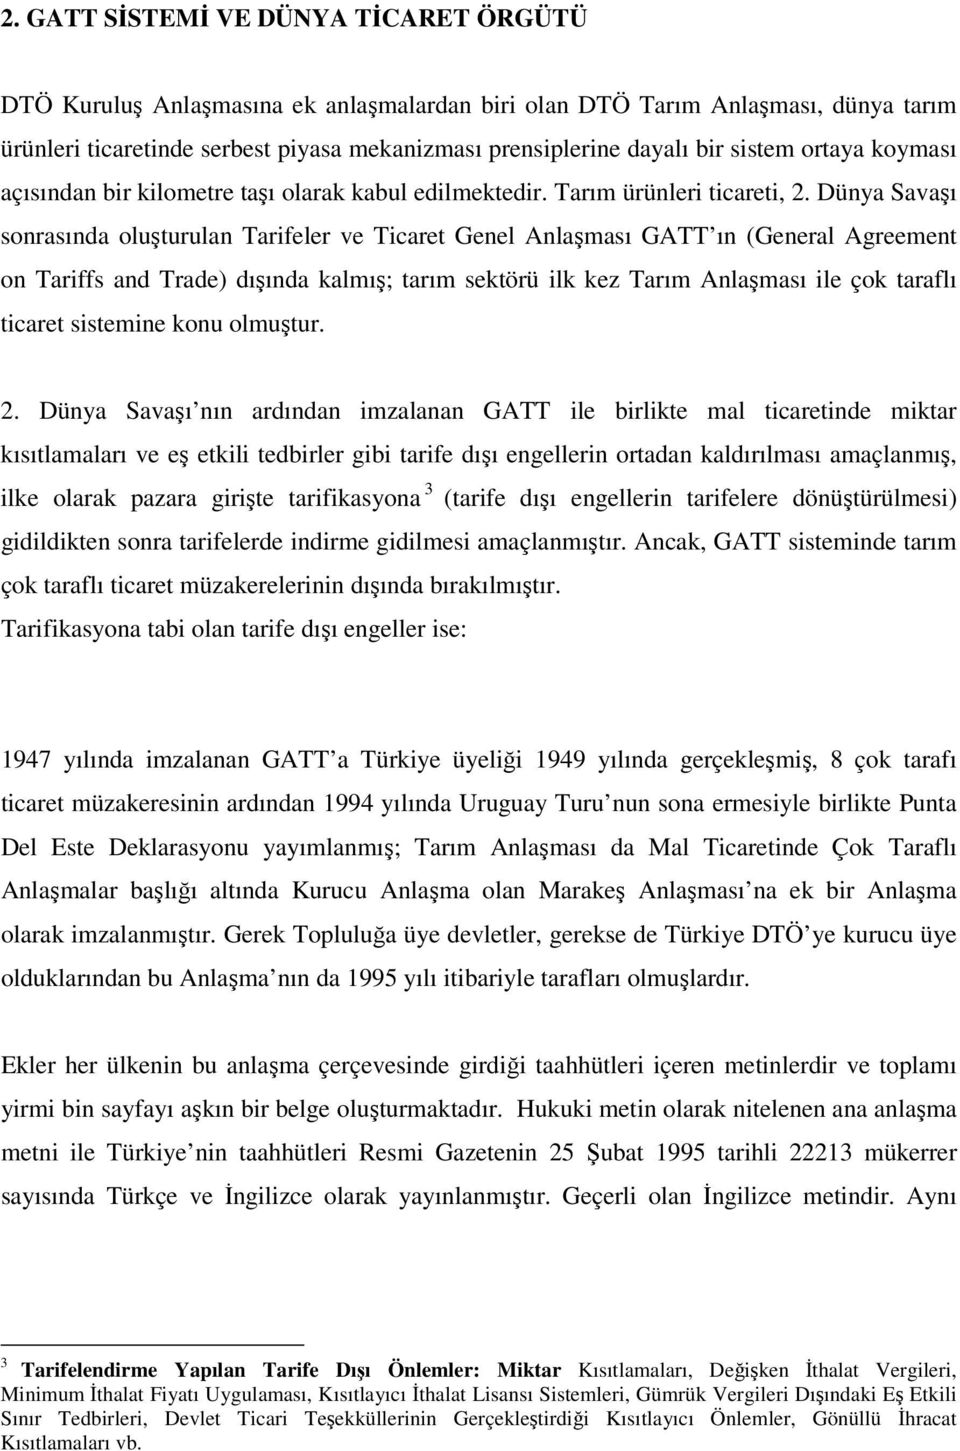 Dünya Savaşı sonrasında oluşturulan Tarifeler ve Ticaret Genel Anlaşması GATT ın (General Agreement on Tariffs and Trade) dışında kalmış; tarım sektörü ilk kez Tarım Anlaşması ile çok taraflı ticaret